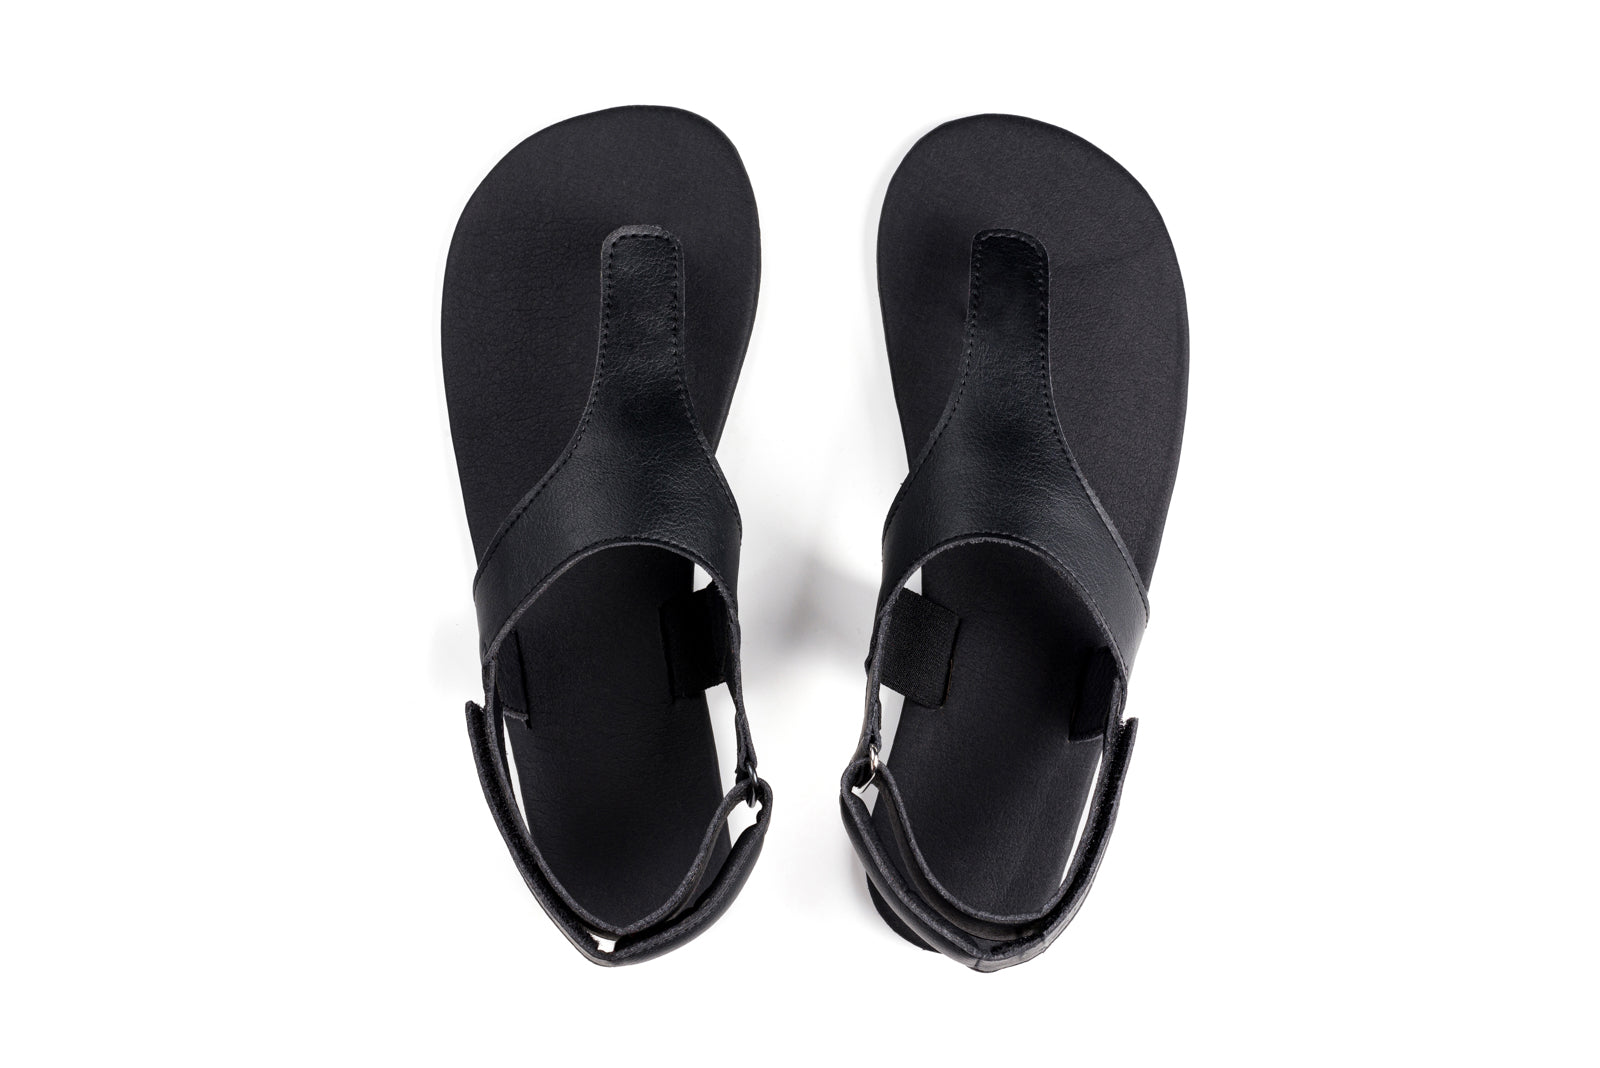 Ahinsa Simple barfods sandaler til kvinder i farven black, top